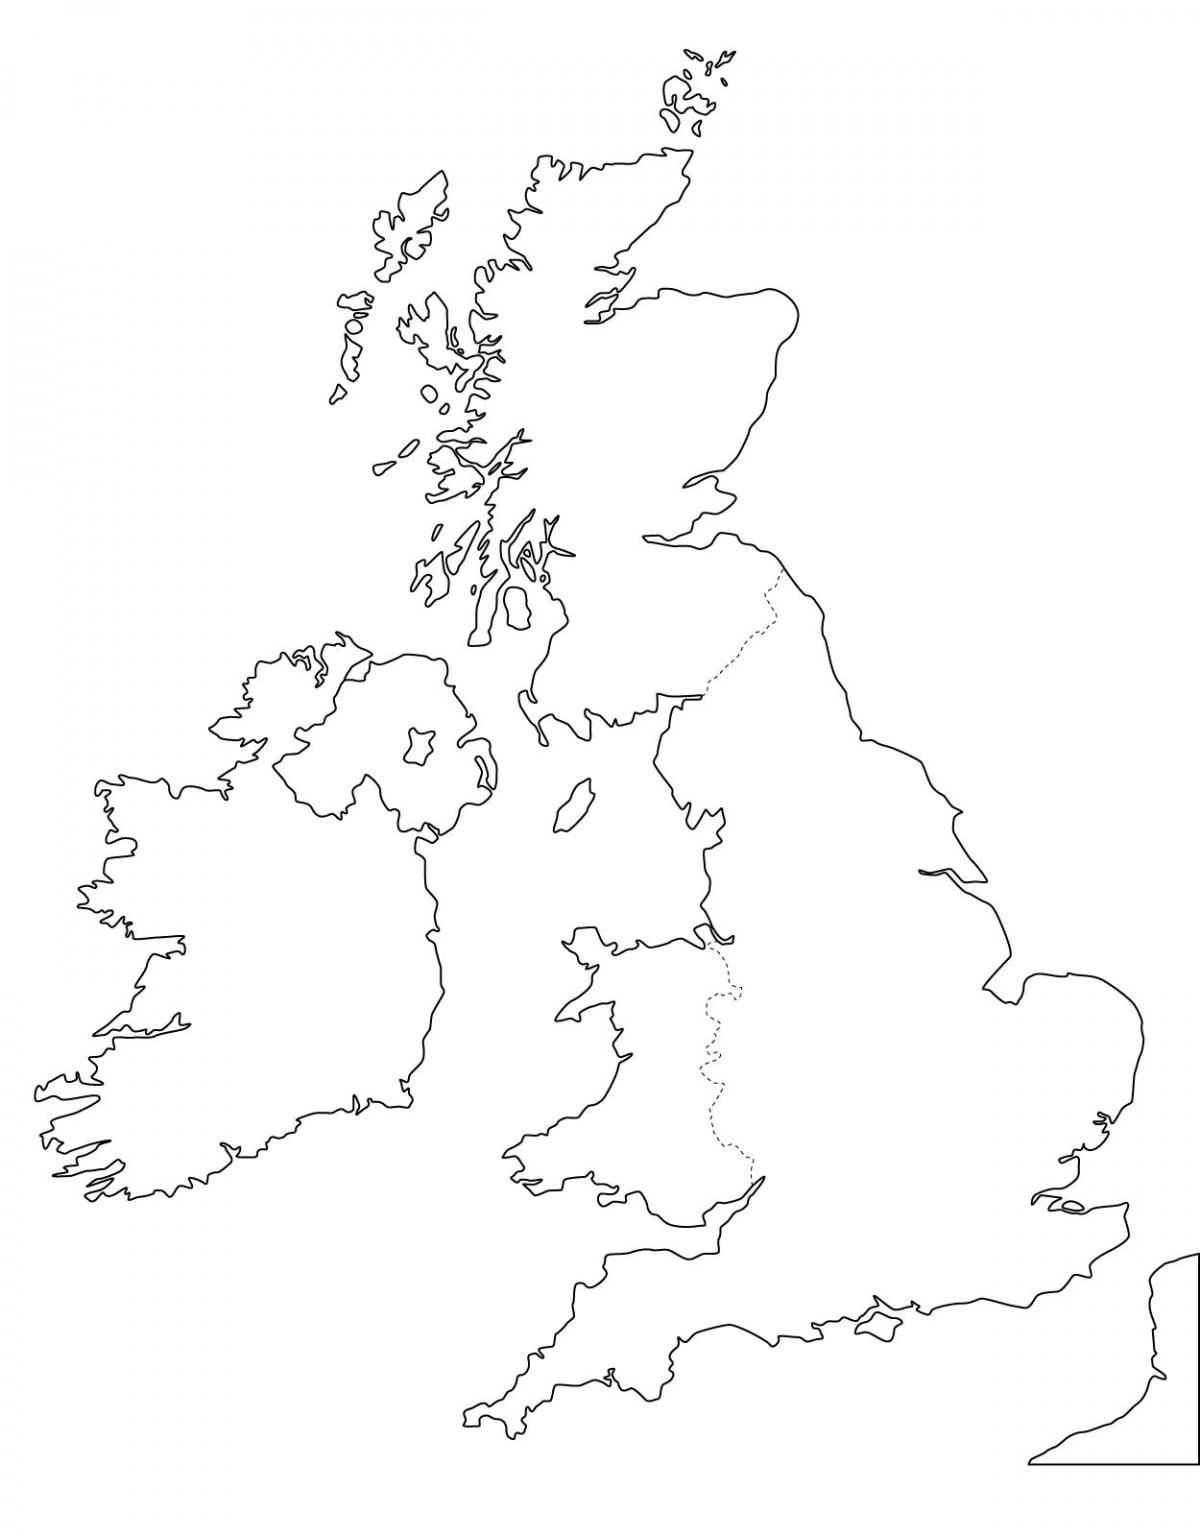 Leere United Kingdom (UK) Karte